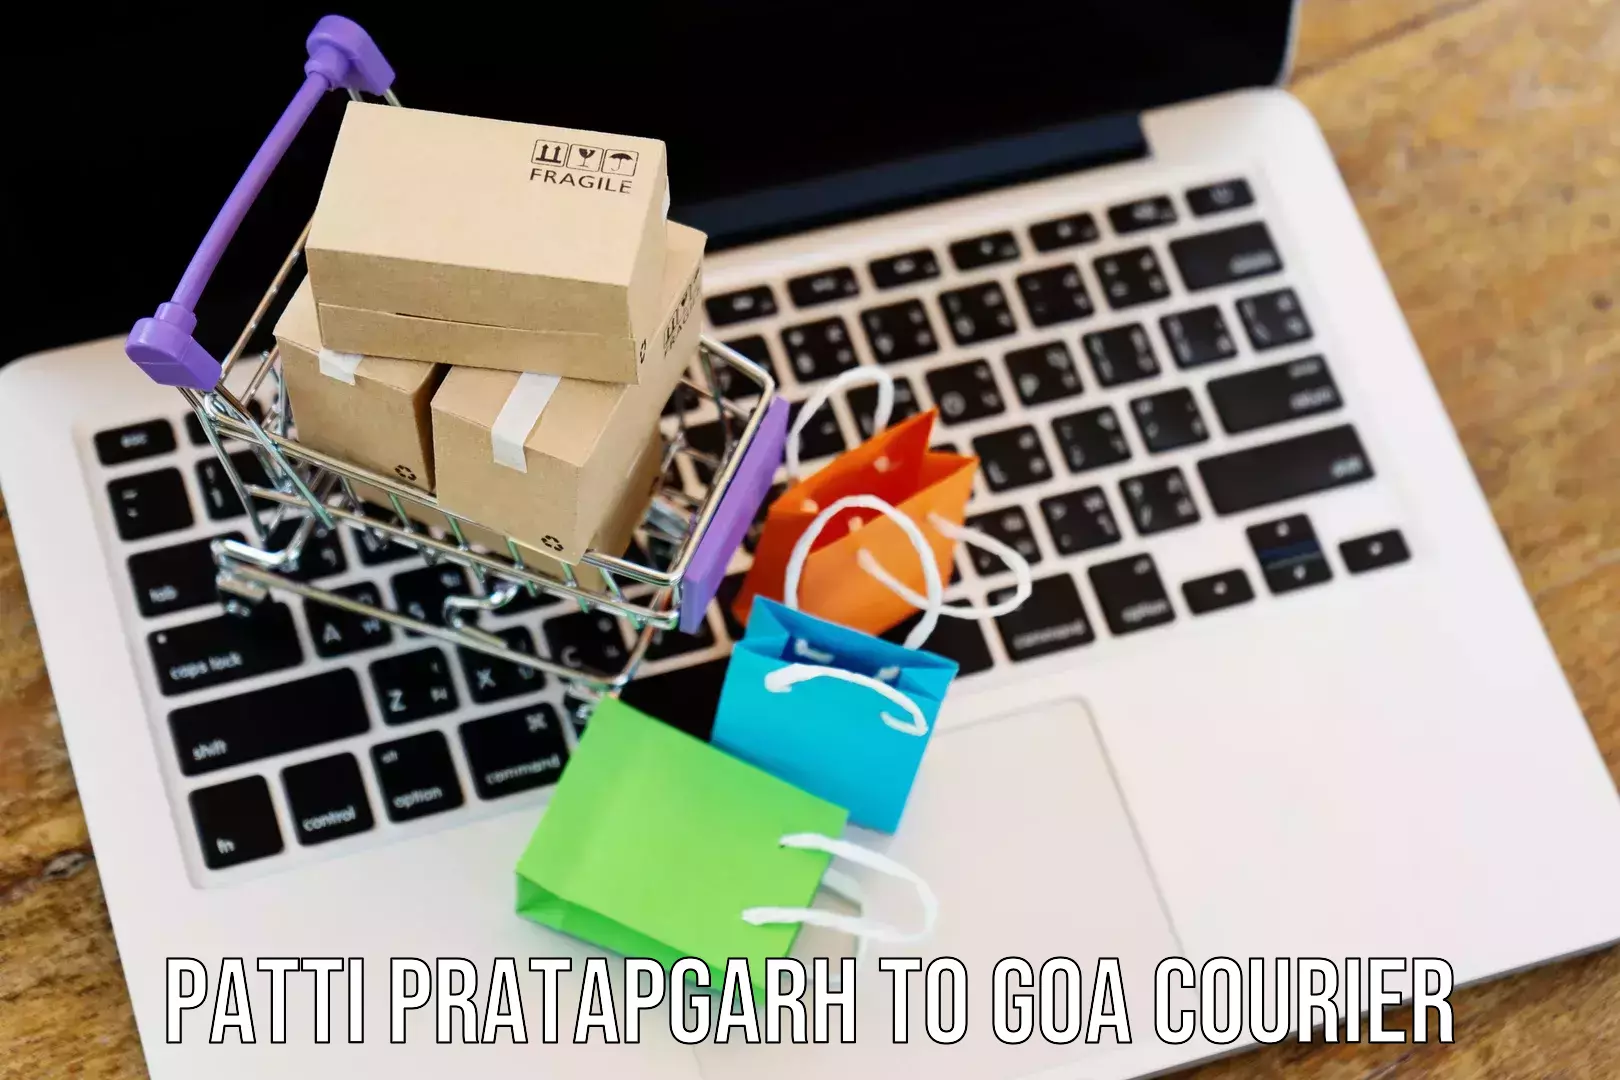 Enhanced tracking features Patti Pratapgarh to NIT Goa